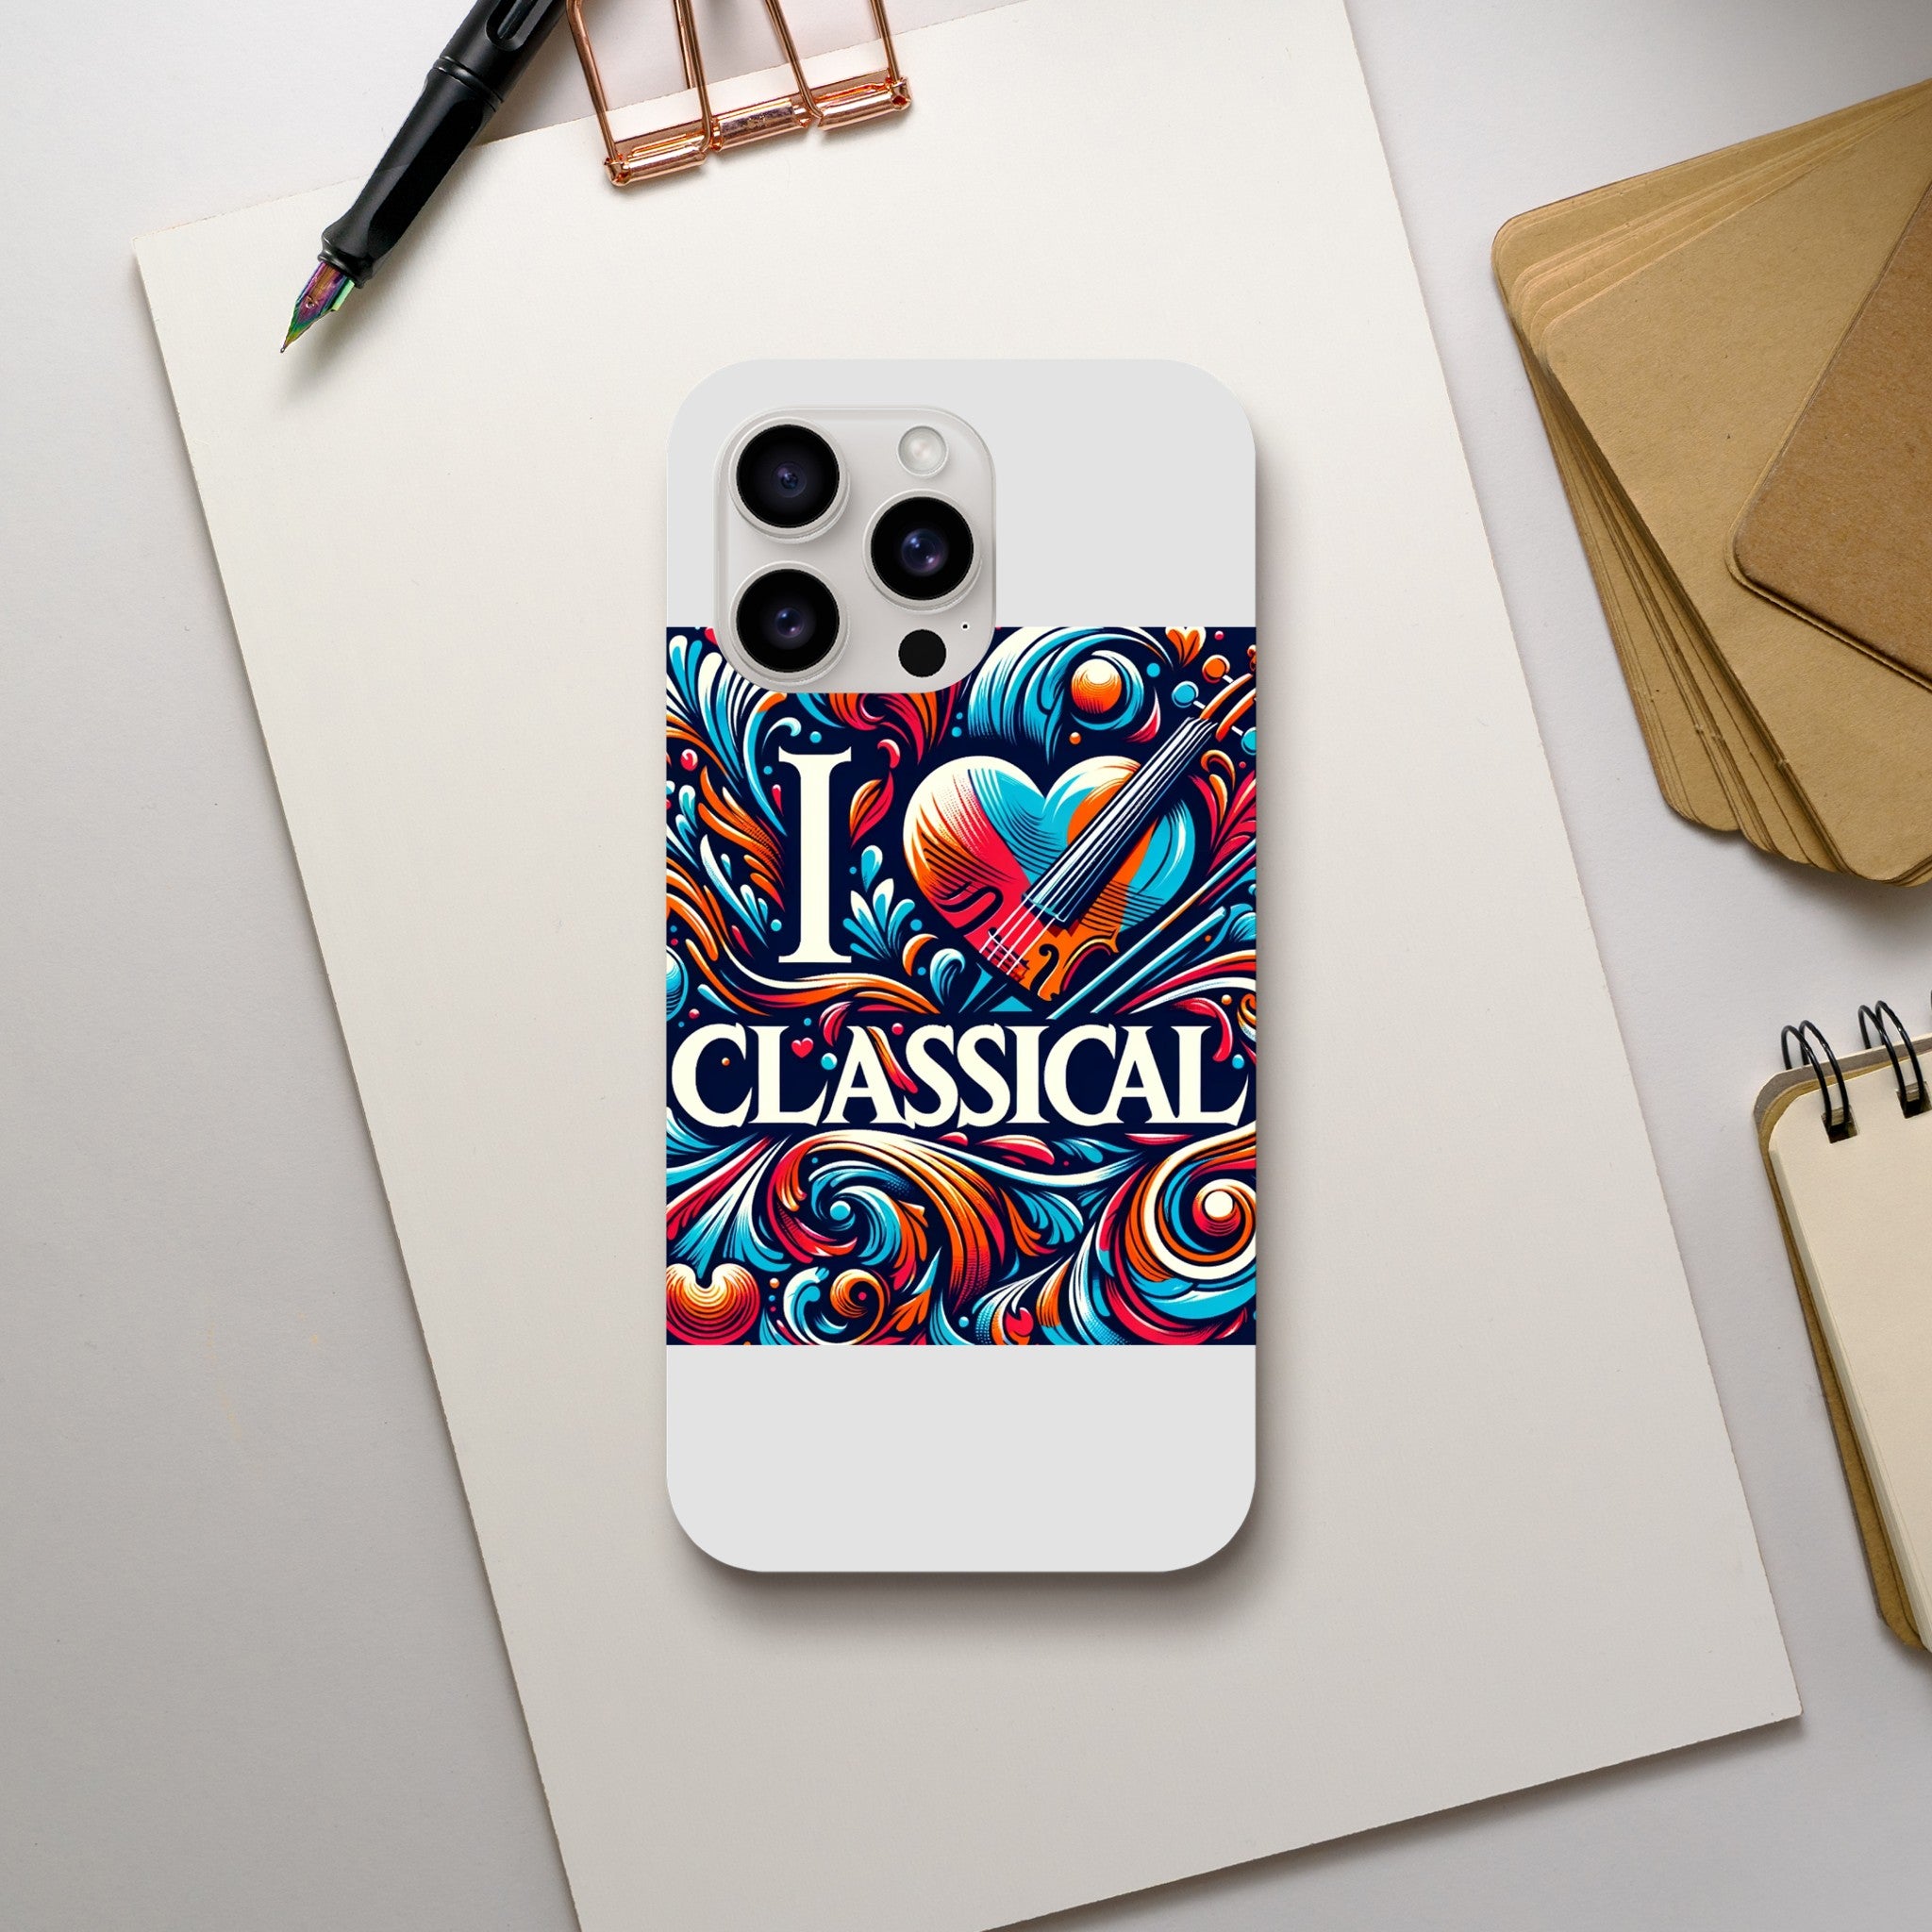 "I LOVE CLASSICAL" Tough case